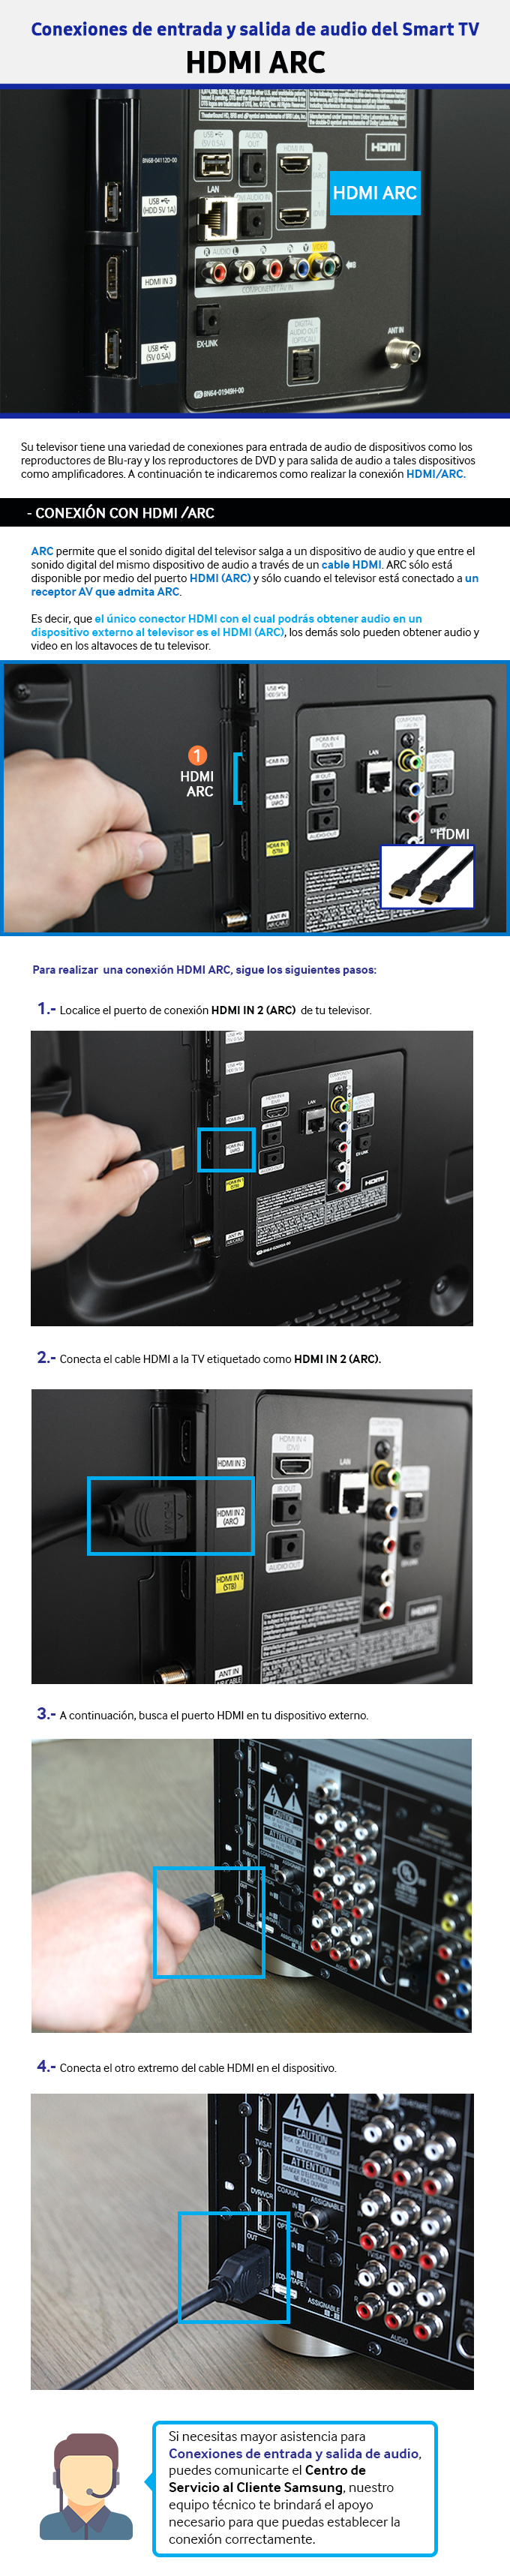 Conexiones de entrada y salida de audio del Smart TV - HDMI ARC